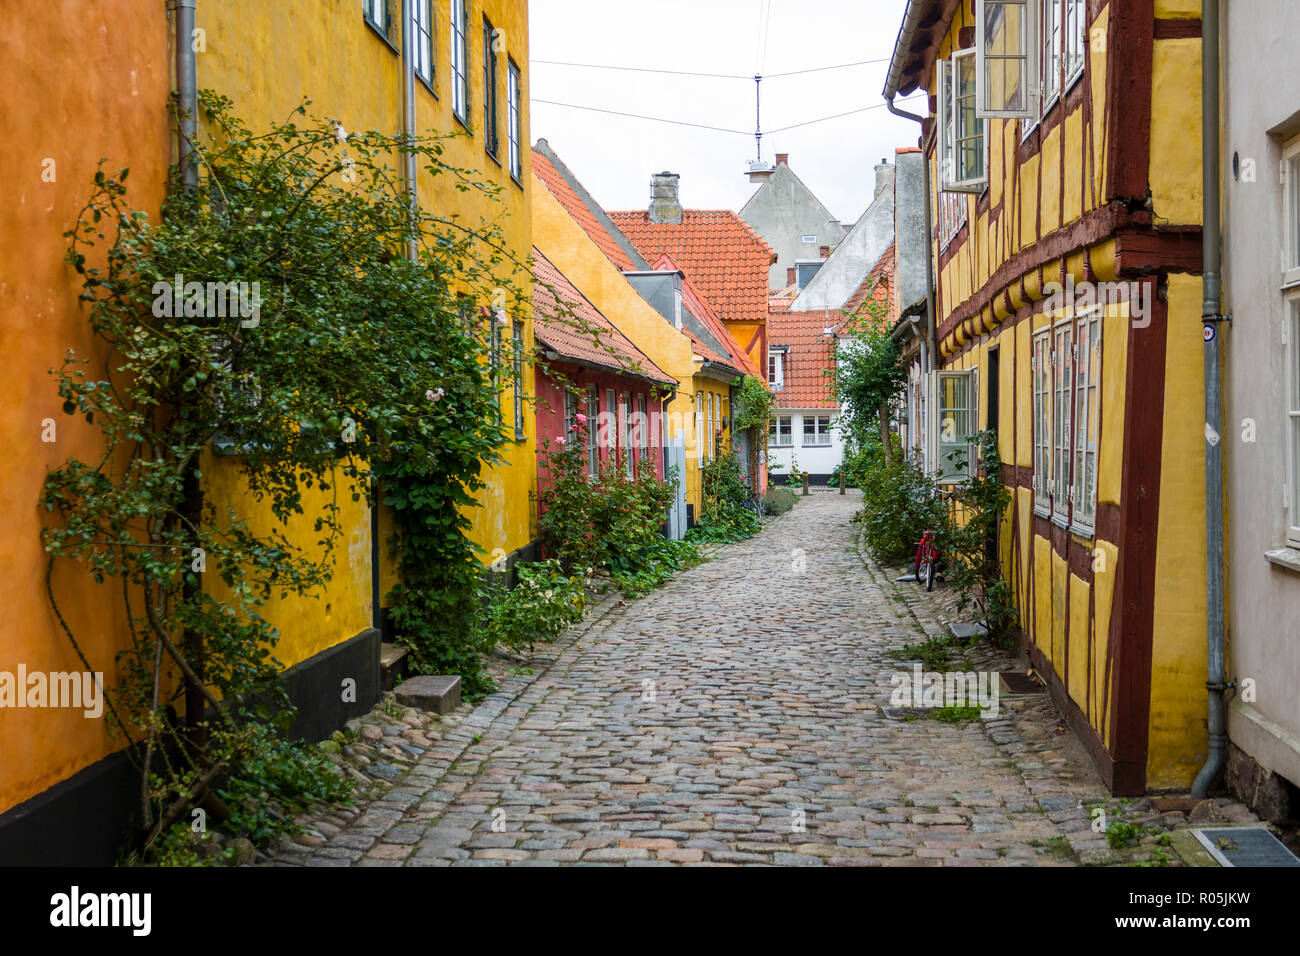 Helsingor noto anche come Elsinore è una città portuale nella parte orientale della Danimarca Foto Stock